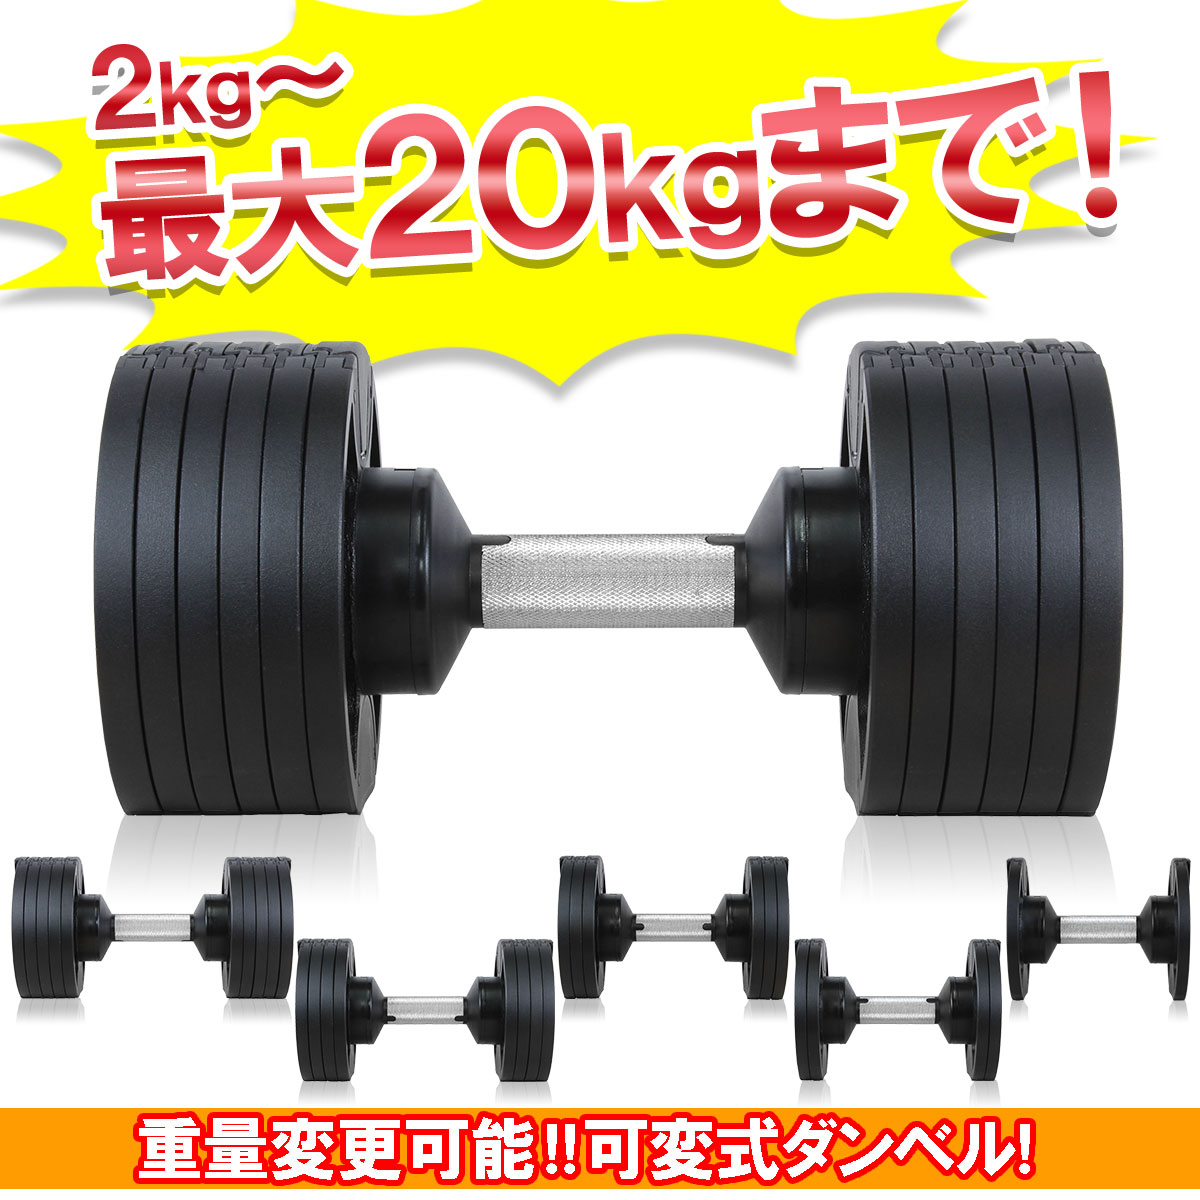 【訳あり】 ダンベル 可変式 20kg 6段階 筋トレ トレーニング アジャスタブル